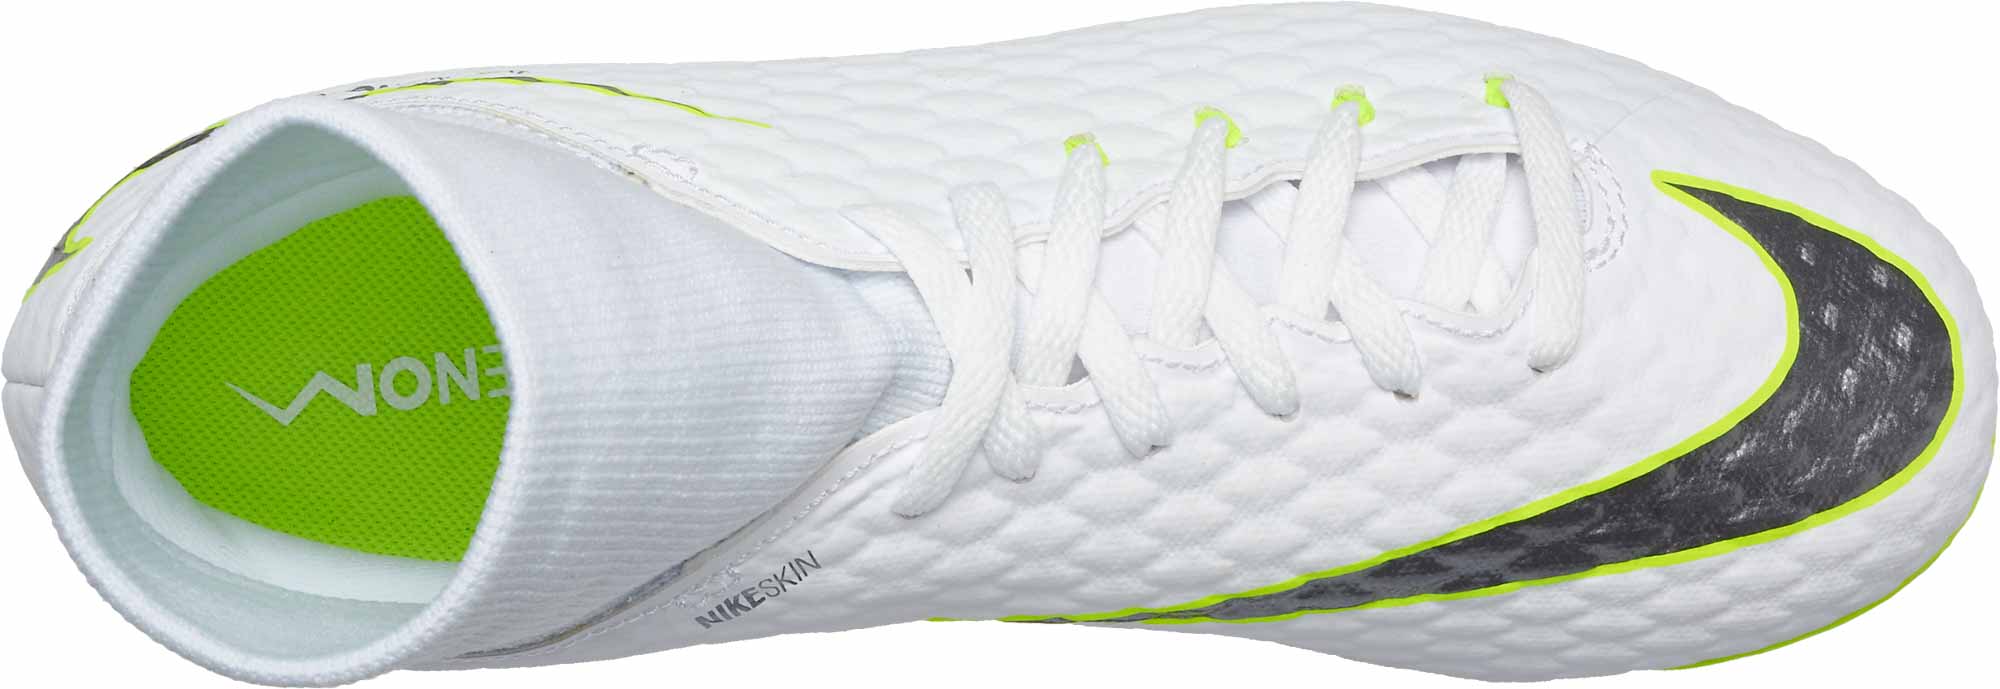 Nike Hypervenom Phantom III Academy DF FG - Youth - White/Metallic Cool  Grey/Volt - Soccer Master